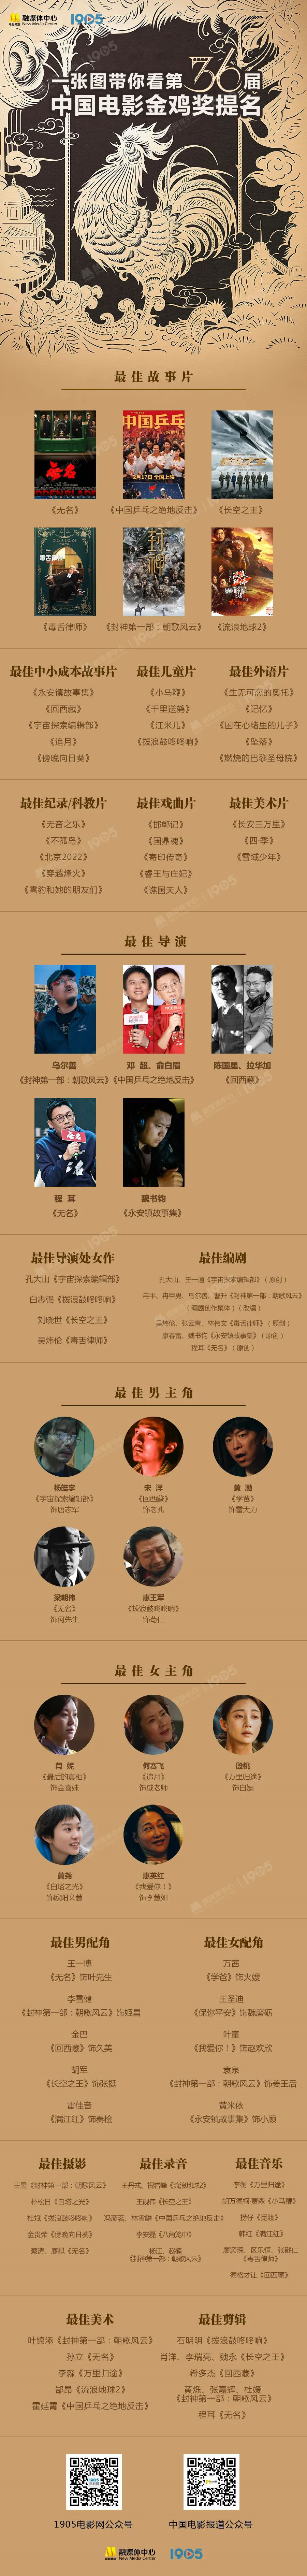 第36届中国电影金鸡奖提名名单公布 11.4揭晓奖项